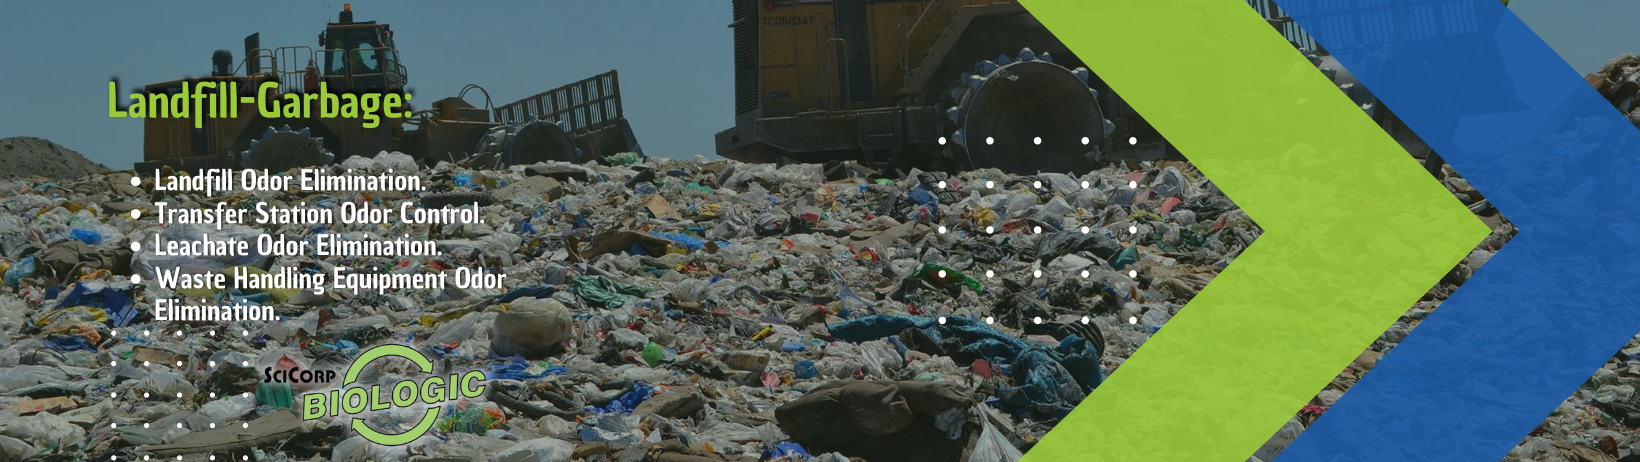 Landfill-Garbage_